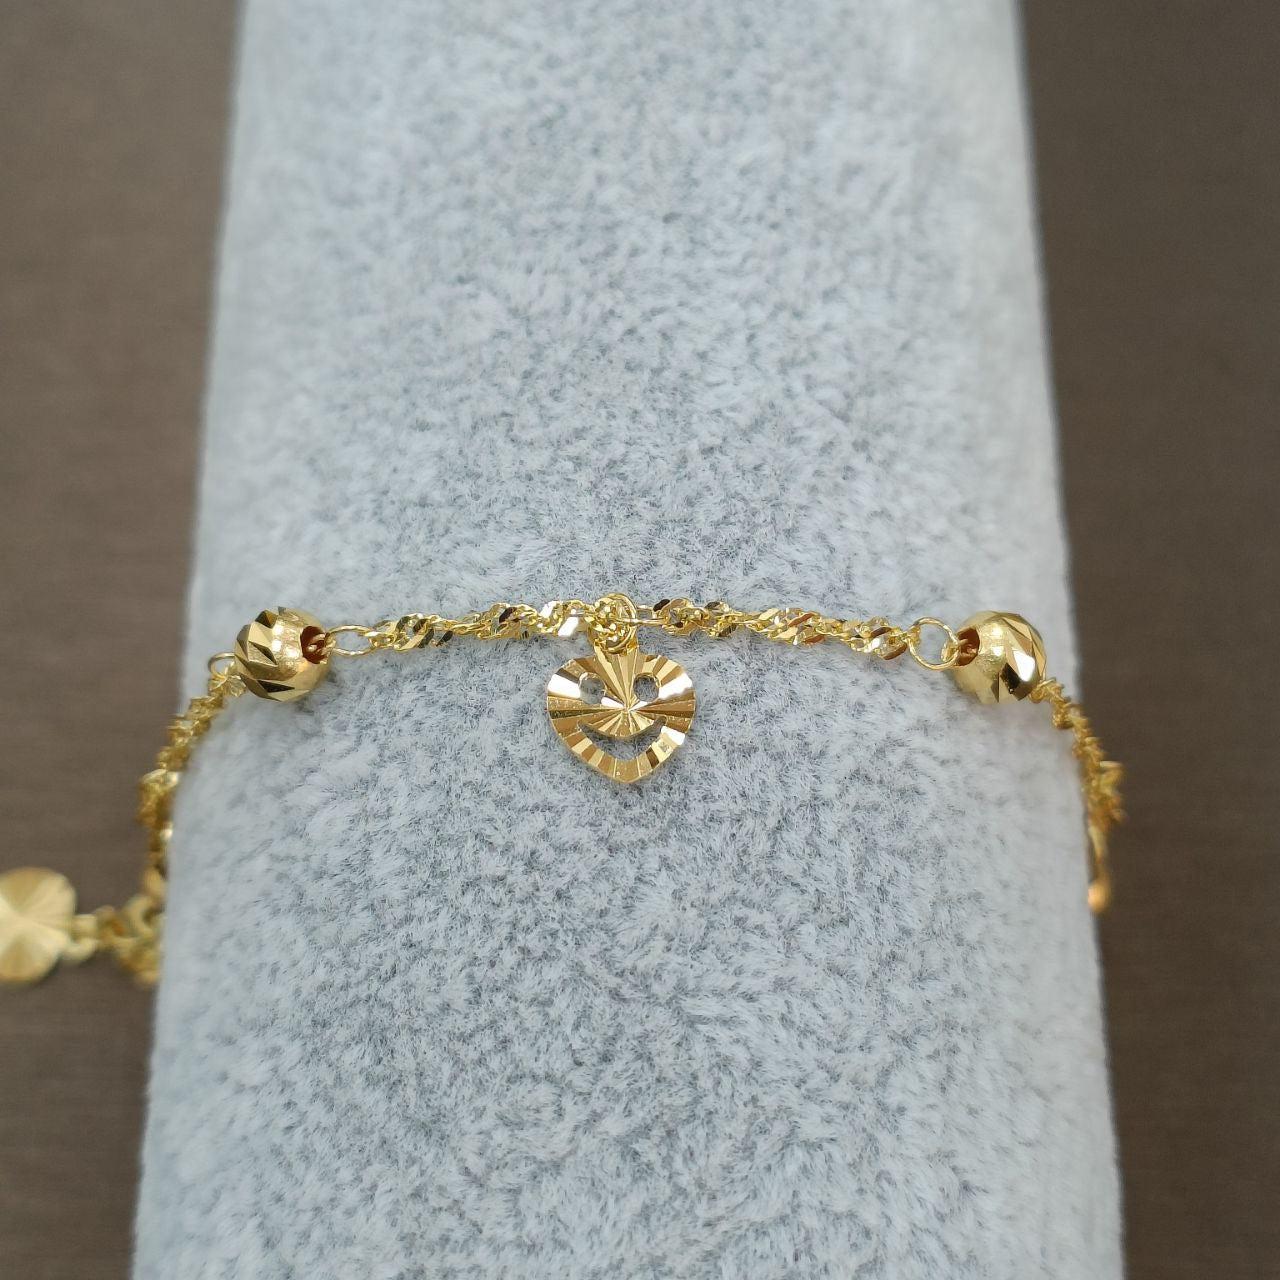 22k / 916 Gold Dangling bracelet V3-916 gold-Best Gold Shop